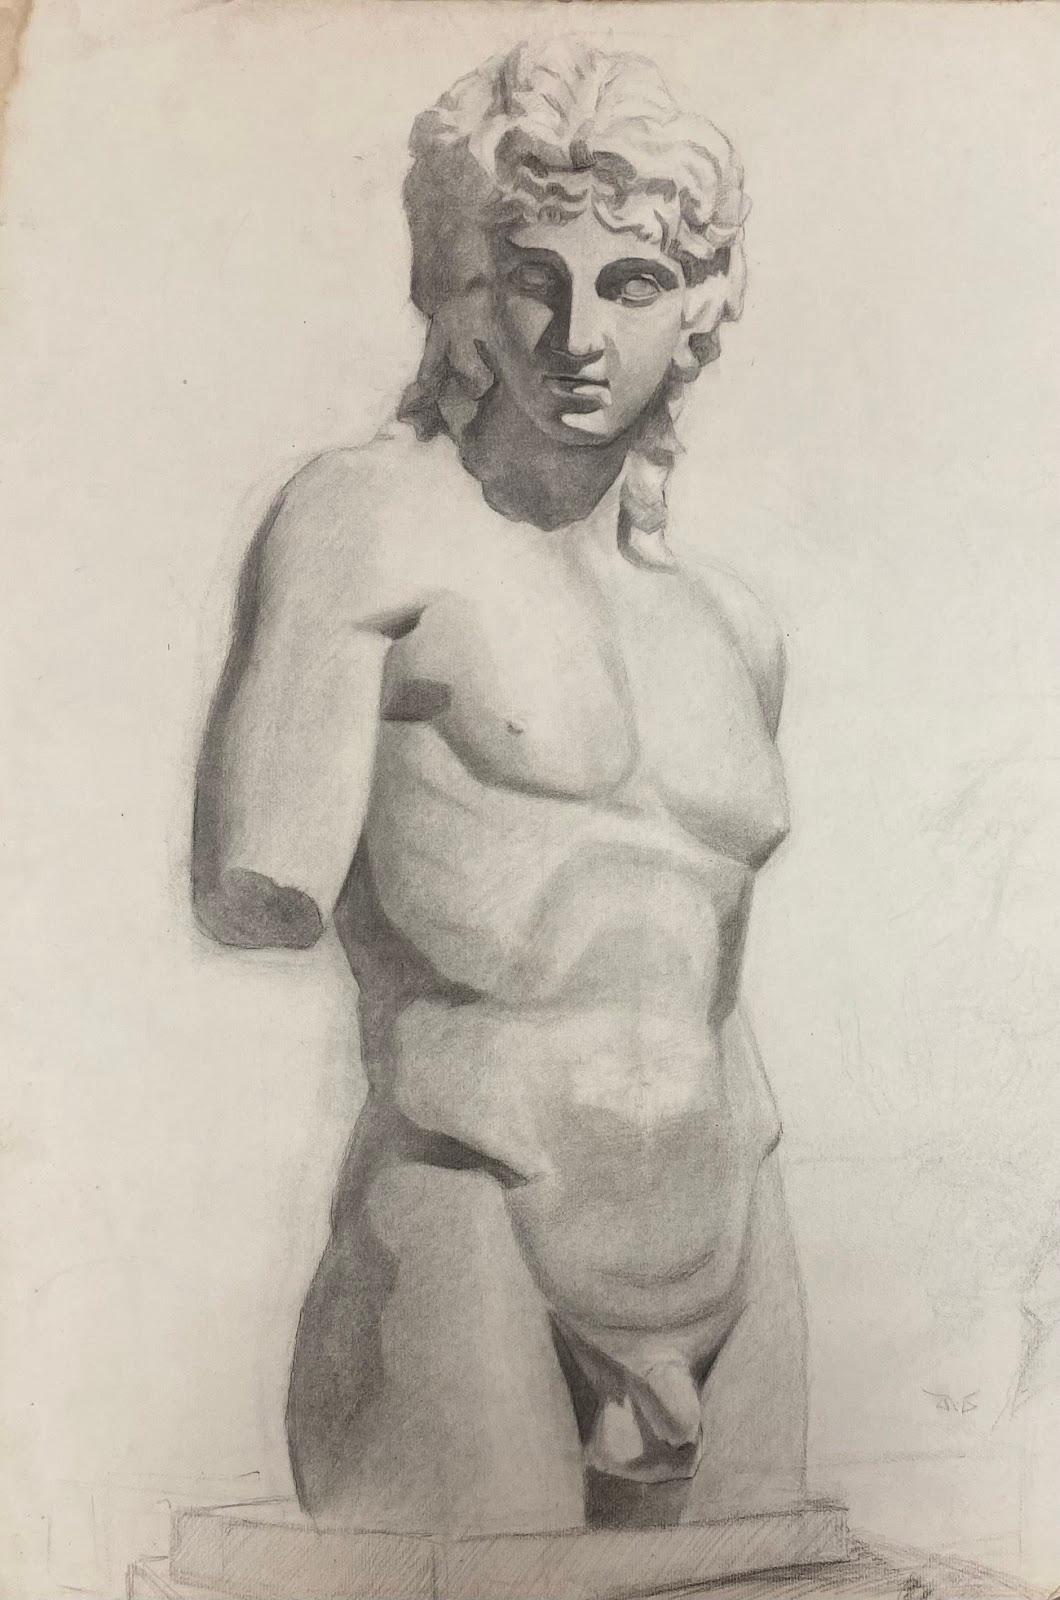 Französische Atelierleben-Zeichnung, akademische Skulptur einer männlichen Aktfigur, 1900er Jahre